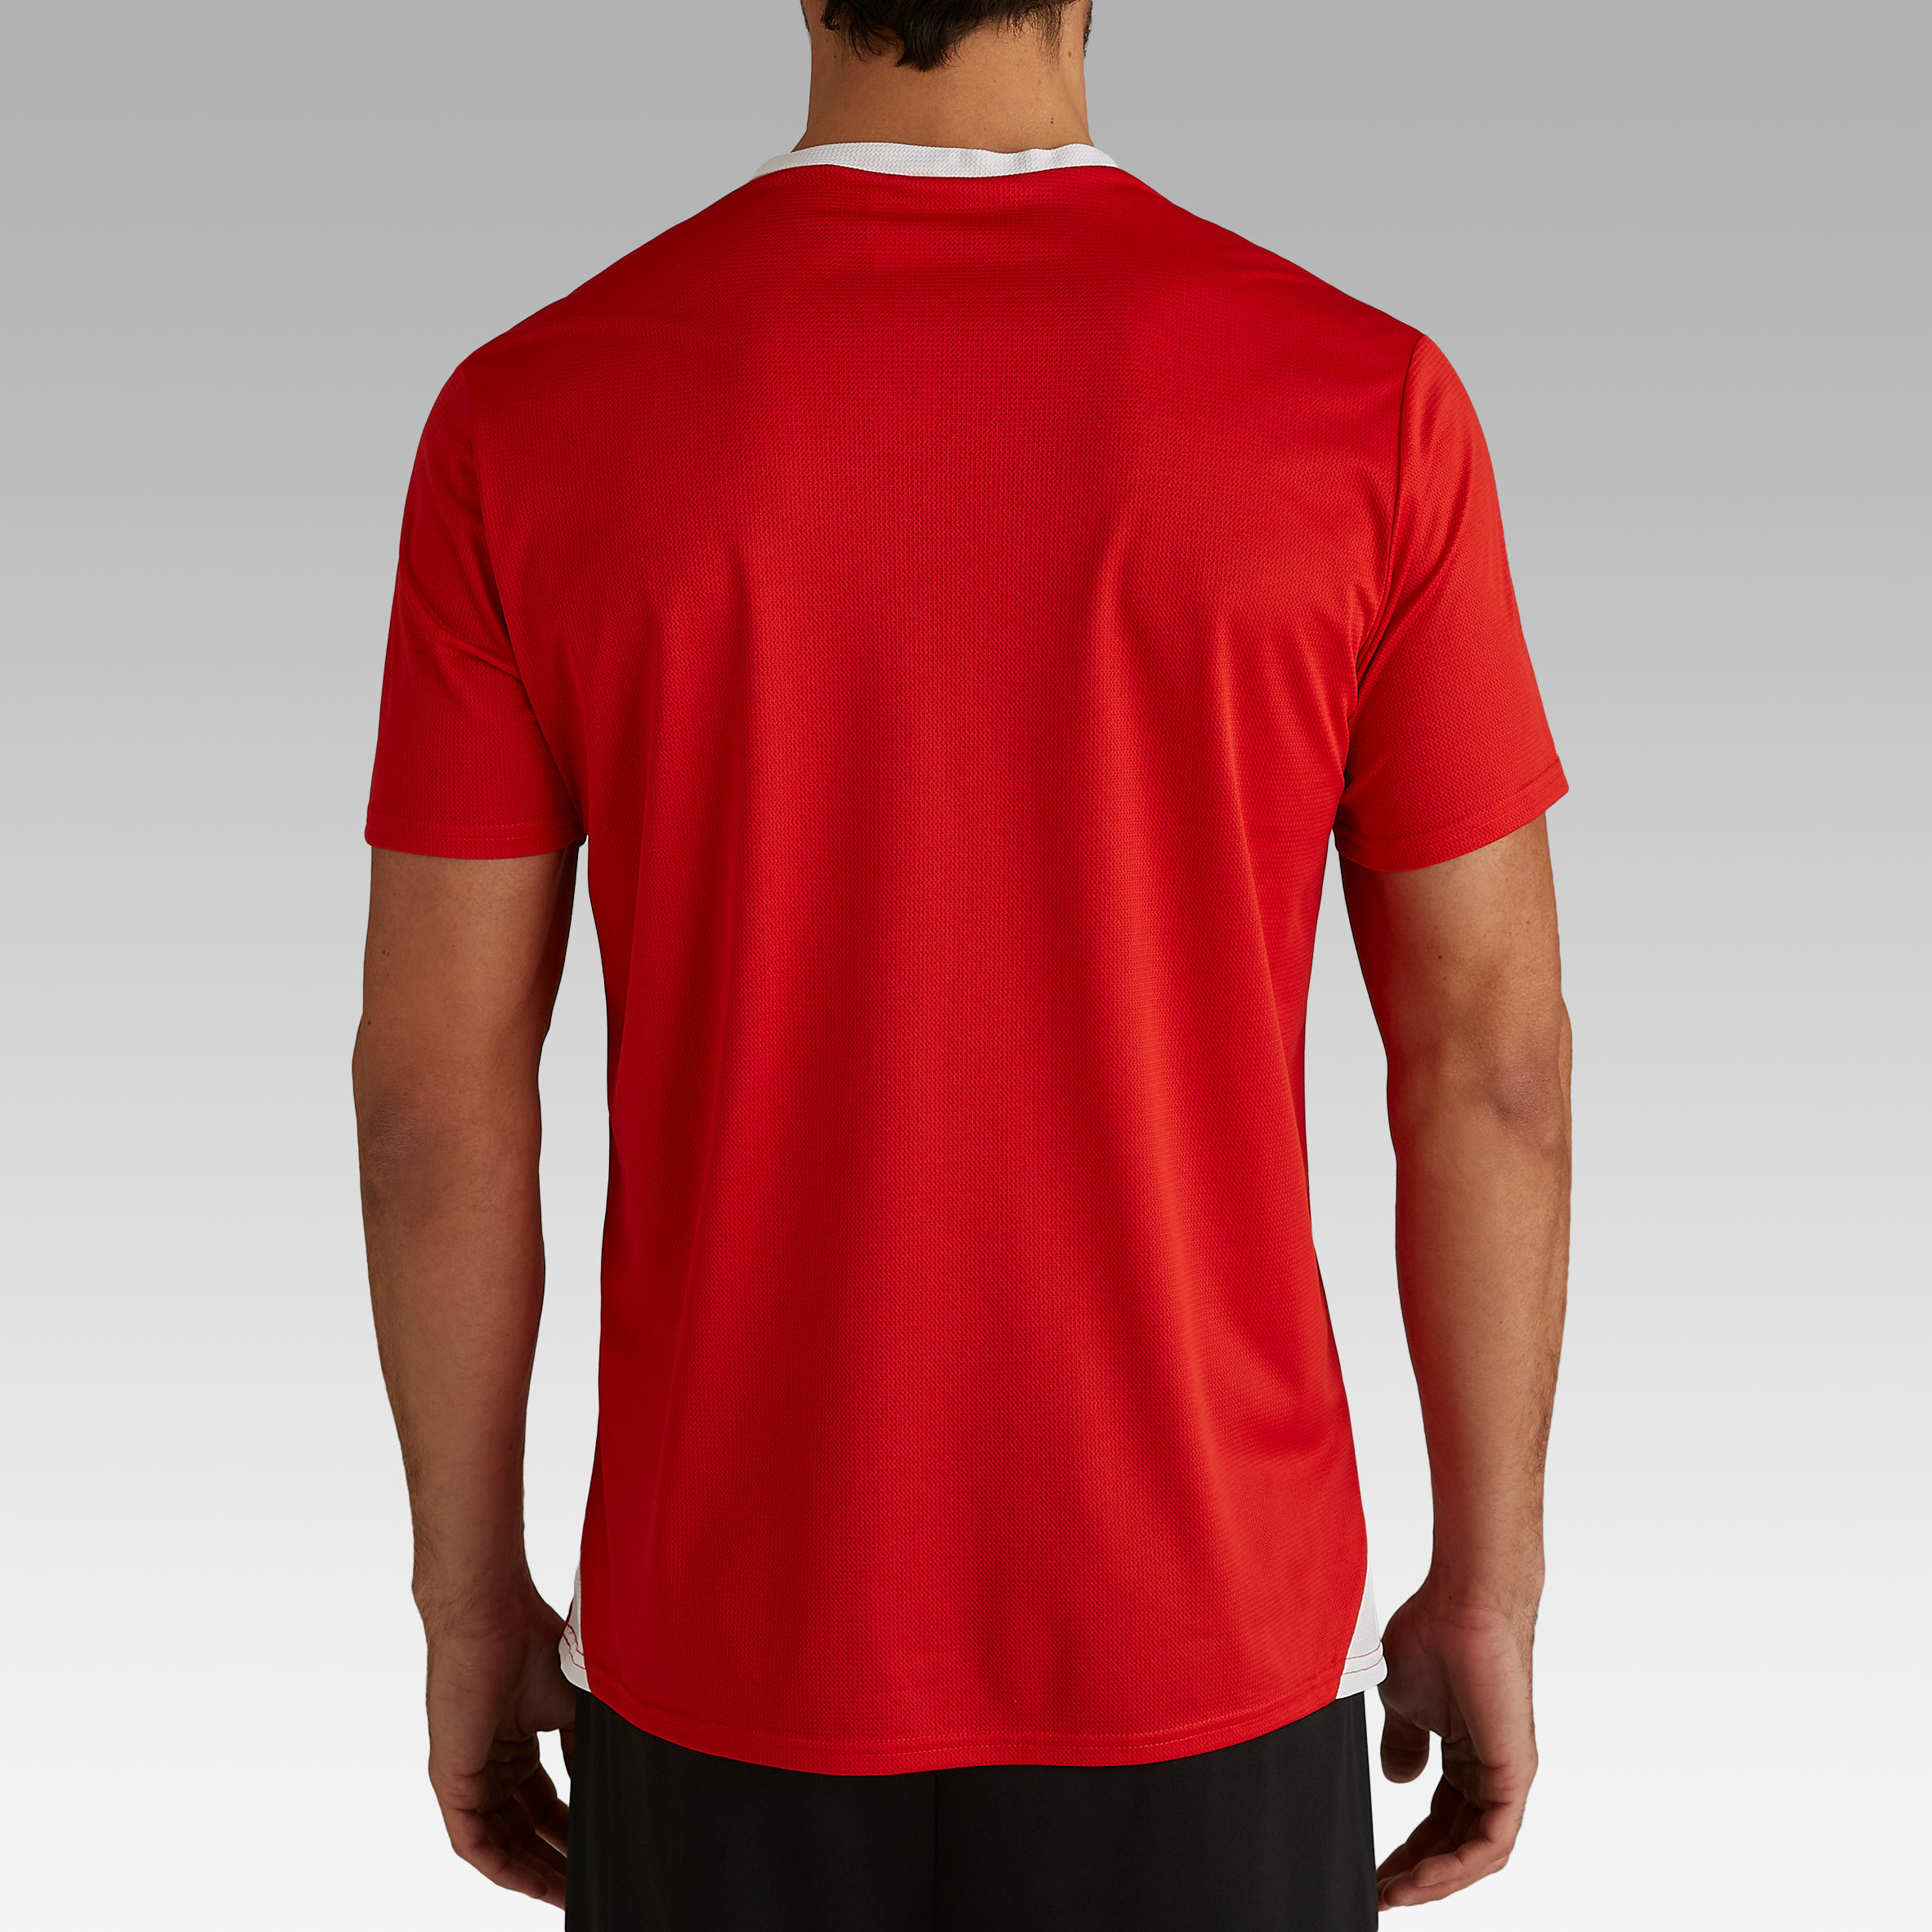 Buy Men's Football Jersey F100 Red Online